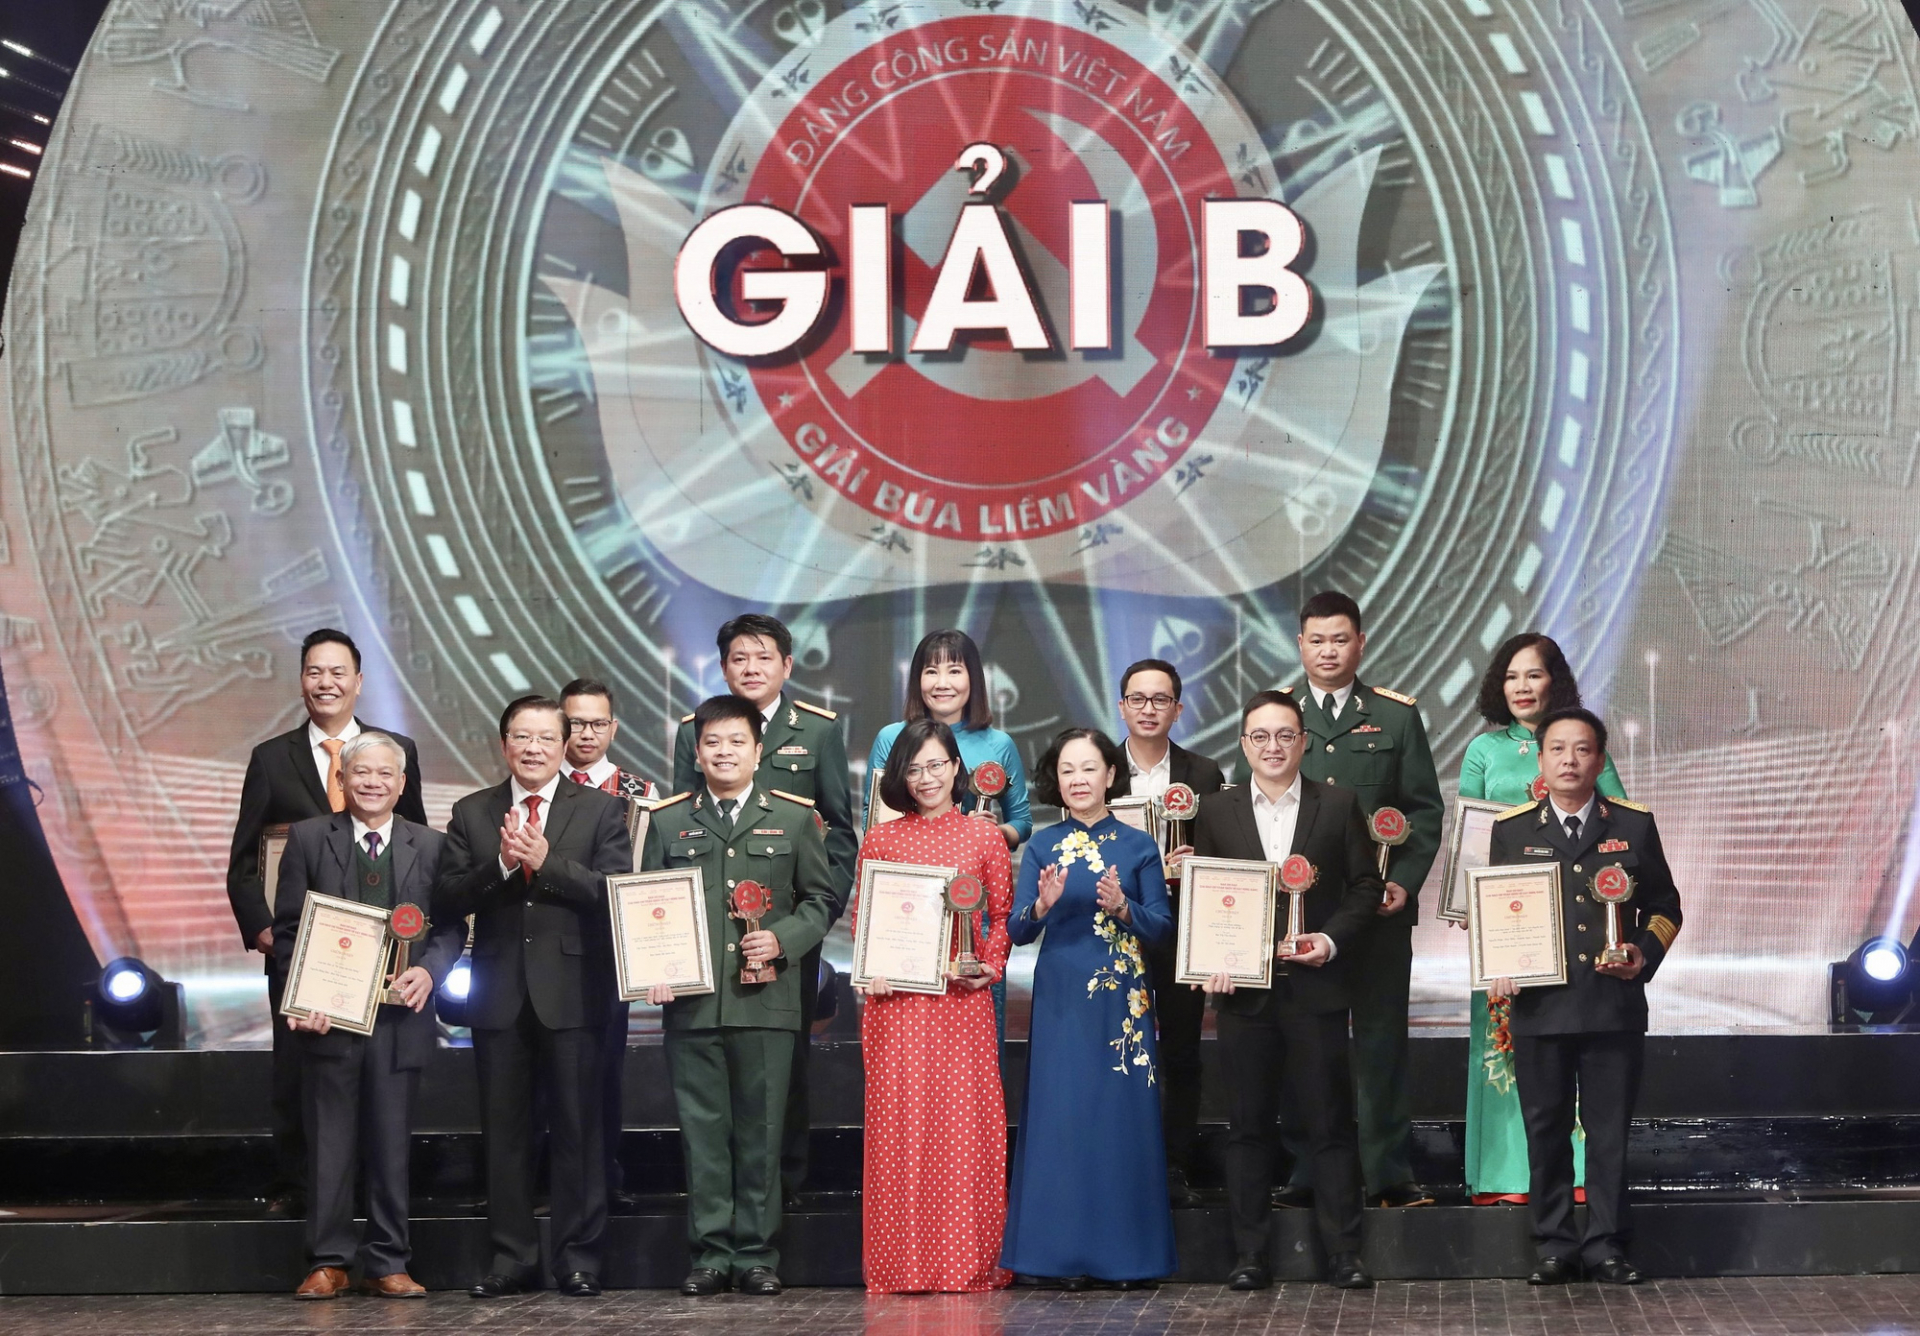 Trưởng ban Tổ chức Trung ương Trương Thị Mai và Trưởng ban Nội chính Trung ương Phan Đình Trạc trao giải cho 12 tác giả đạt Giải B Búa liềm vàng